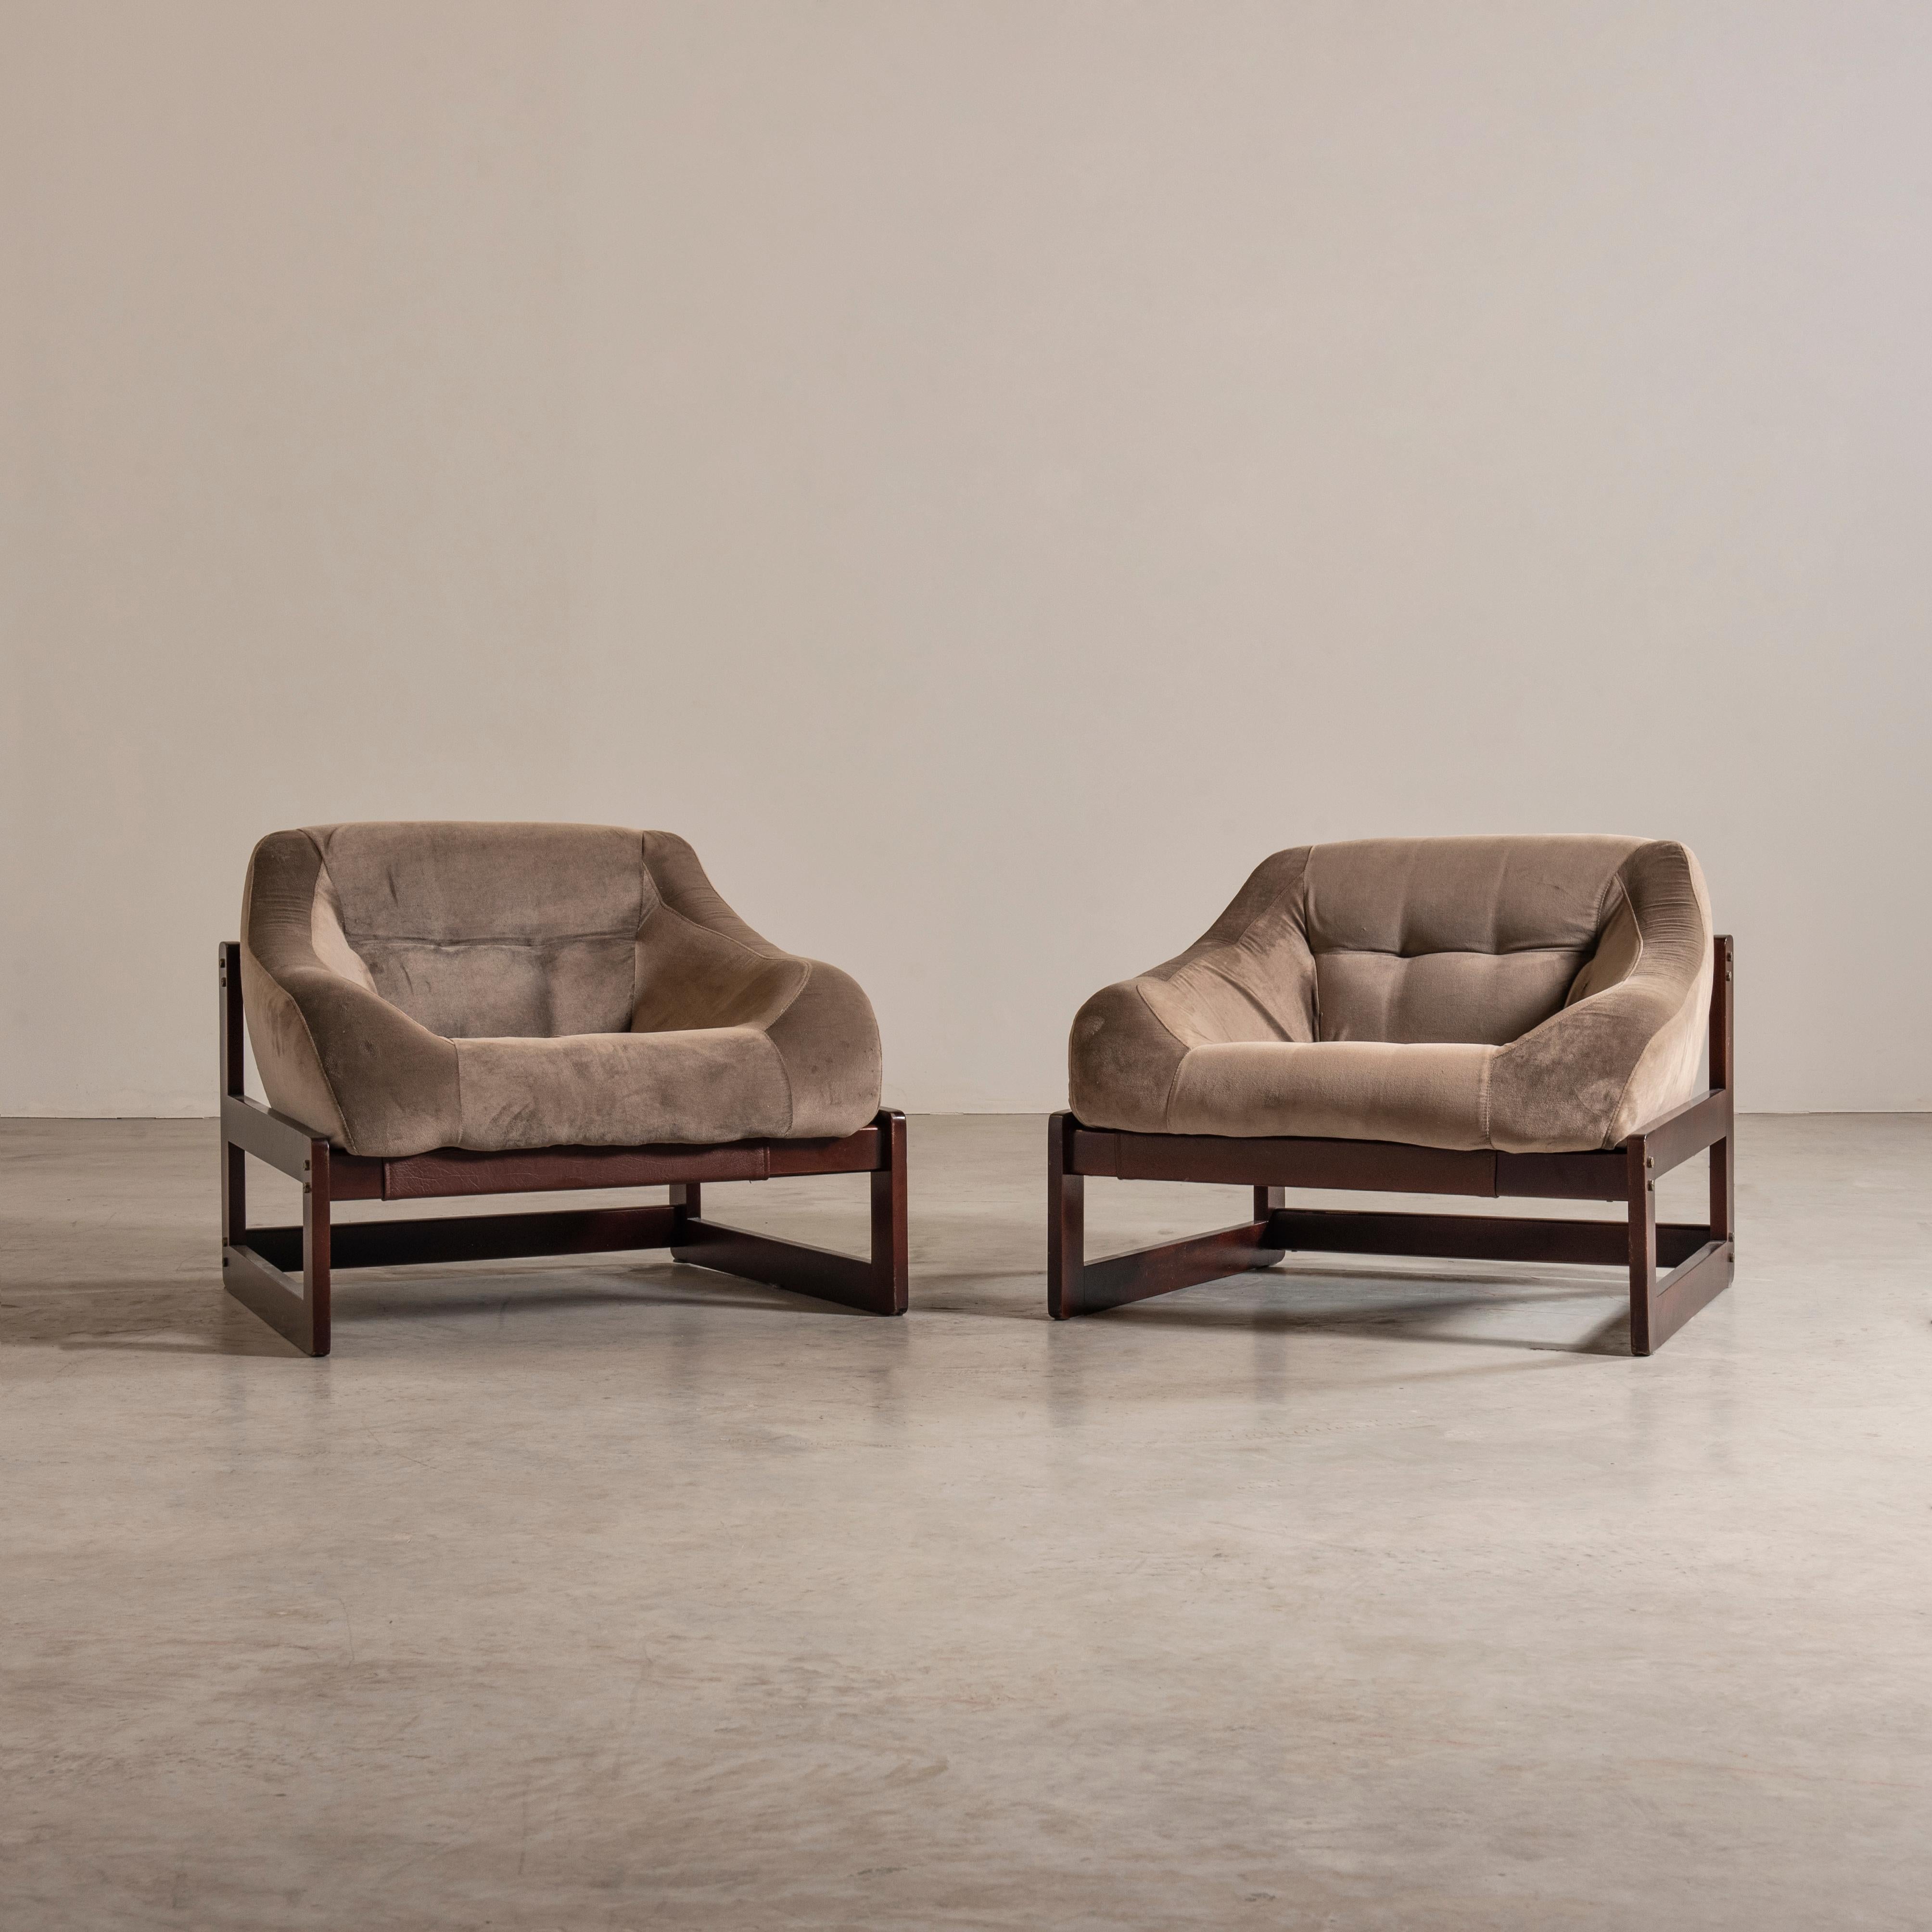 Cette paire de fauteuils, créée dans les années 1970 par le designer Percival Lafer, est extrêmement confortable et est capable d'apporter un sens de la personnalité et du style à n'importe quel décor. La structure est en bois de Jatoba et l'assise